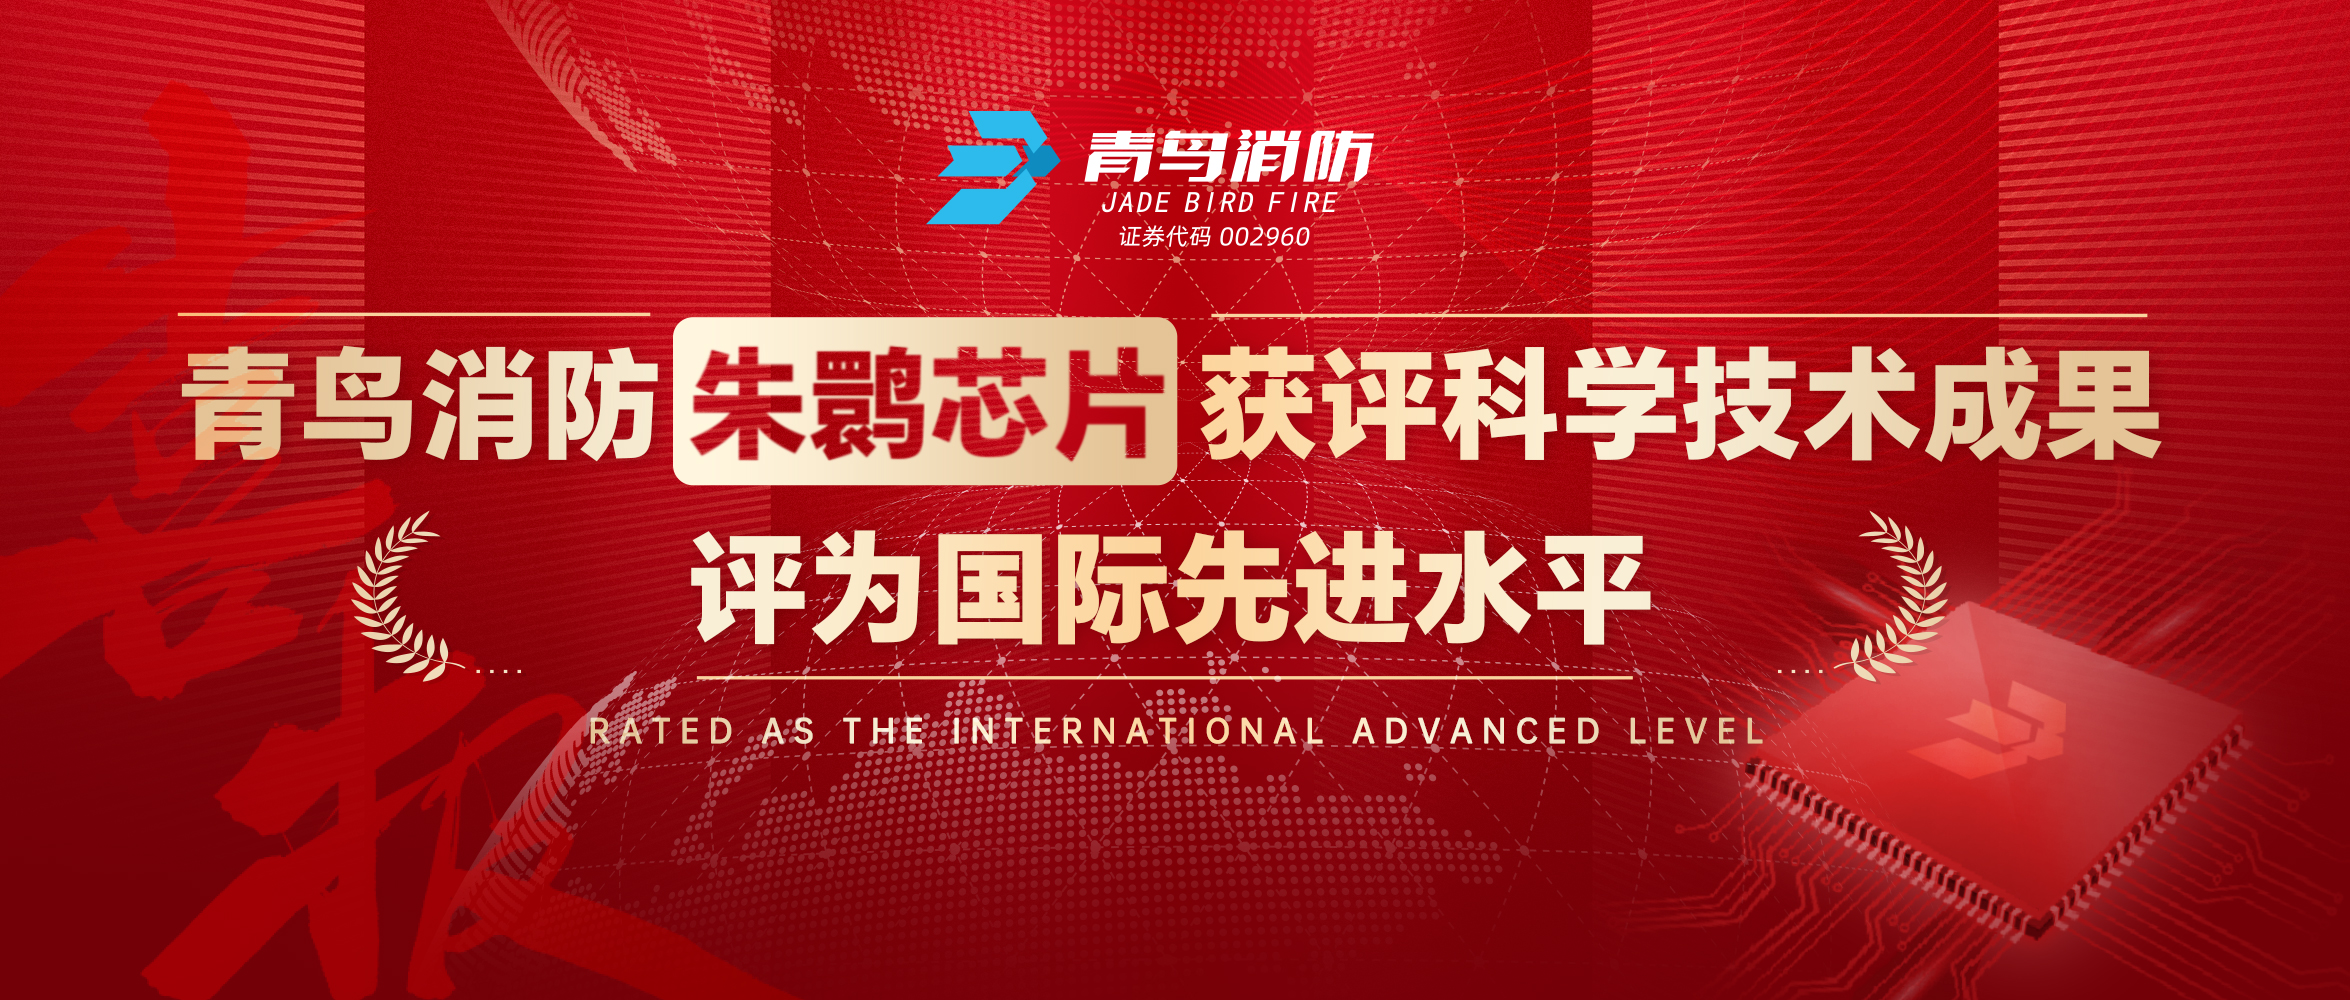 九游会j9官网入口
朱鹮芯片获评科学技术成果，评为国际先进水平